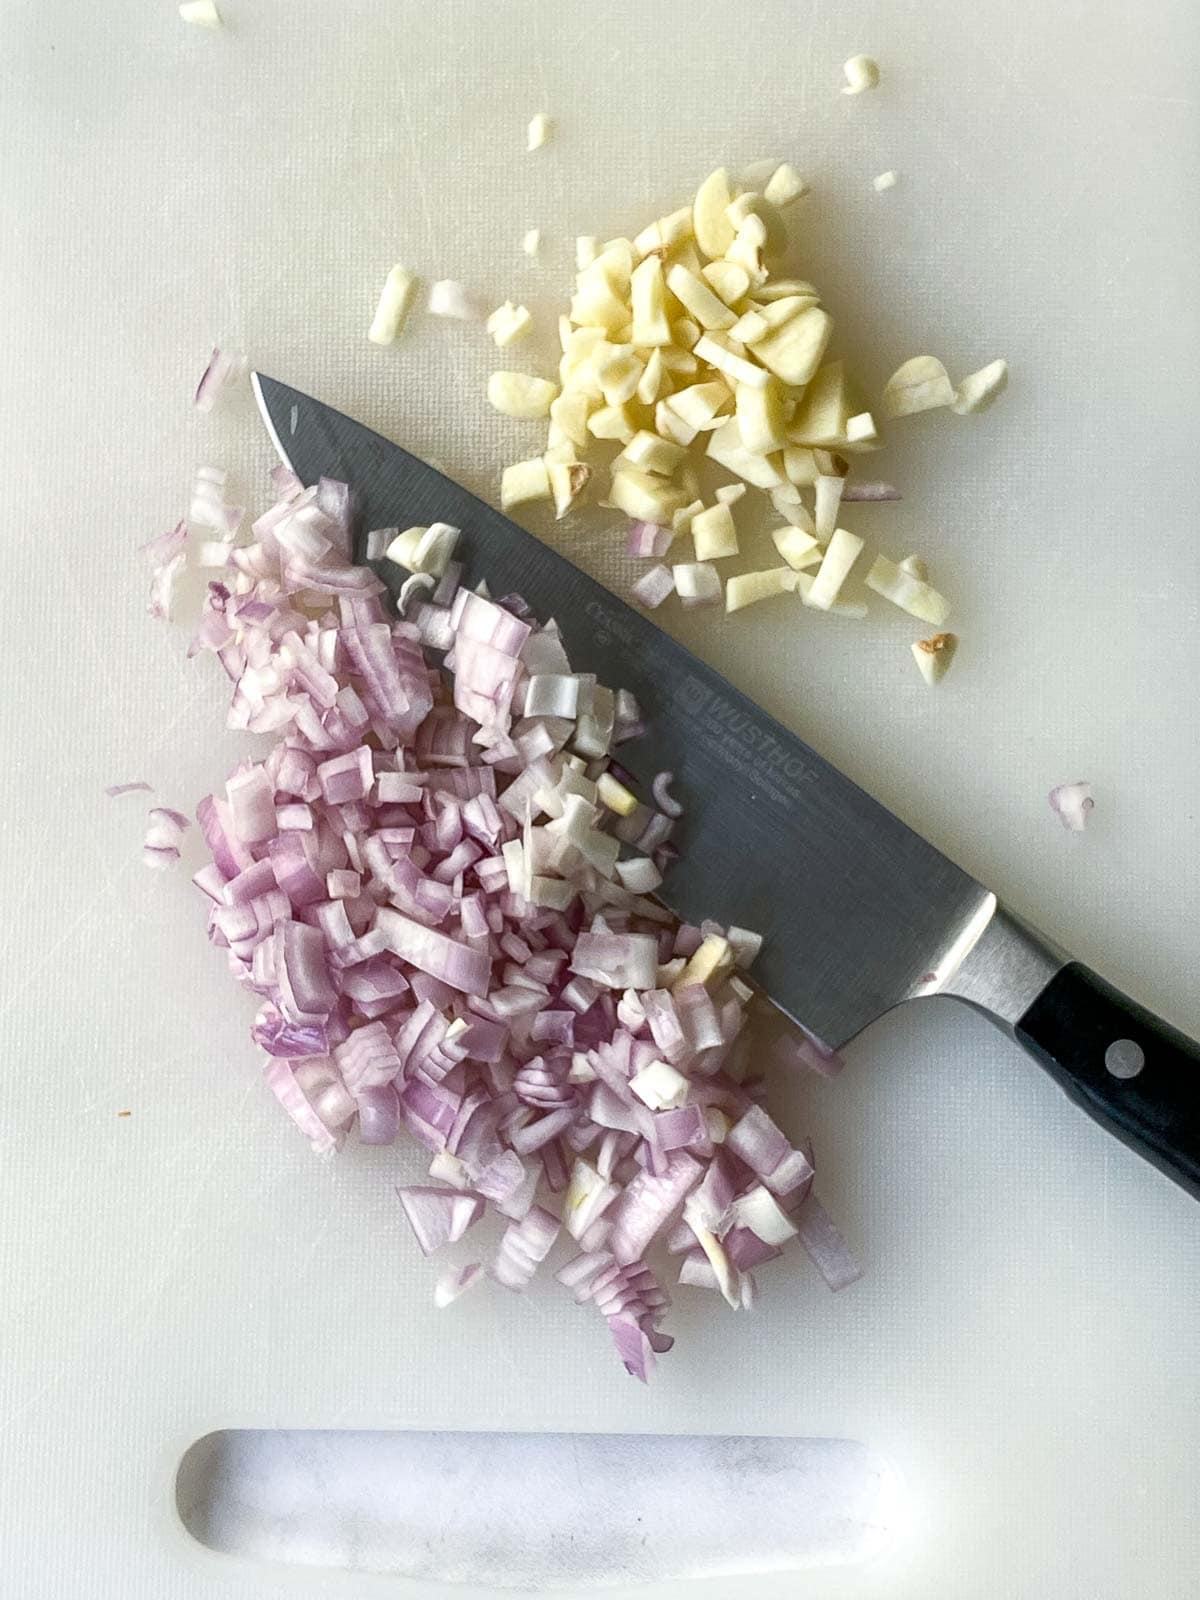 Chopping shallot and garlic. 